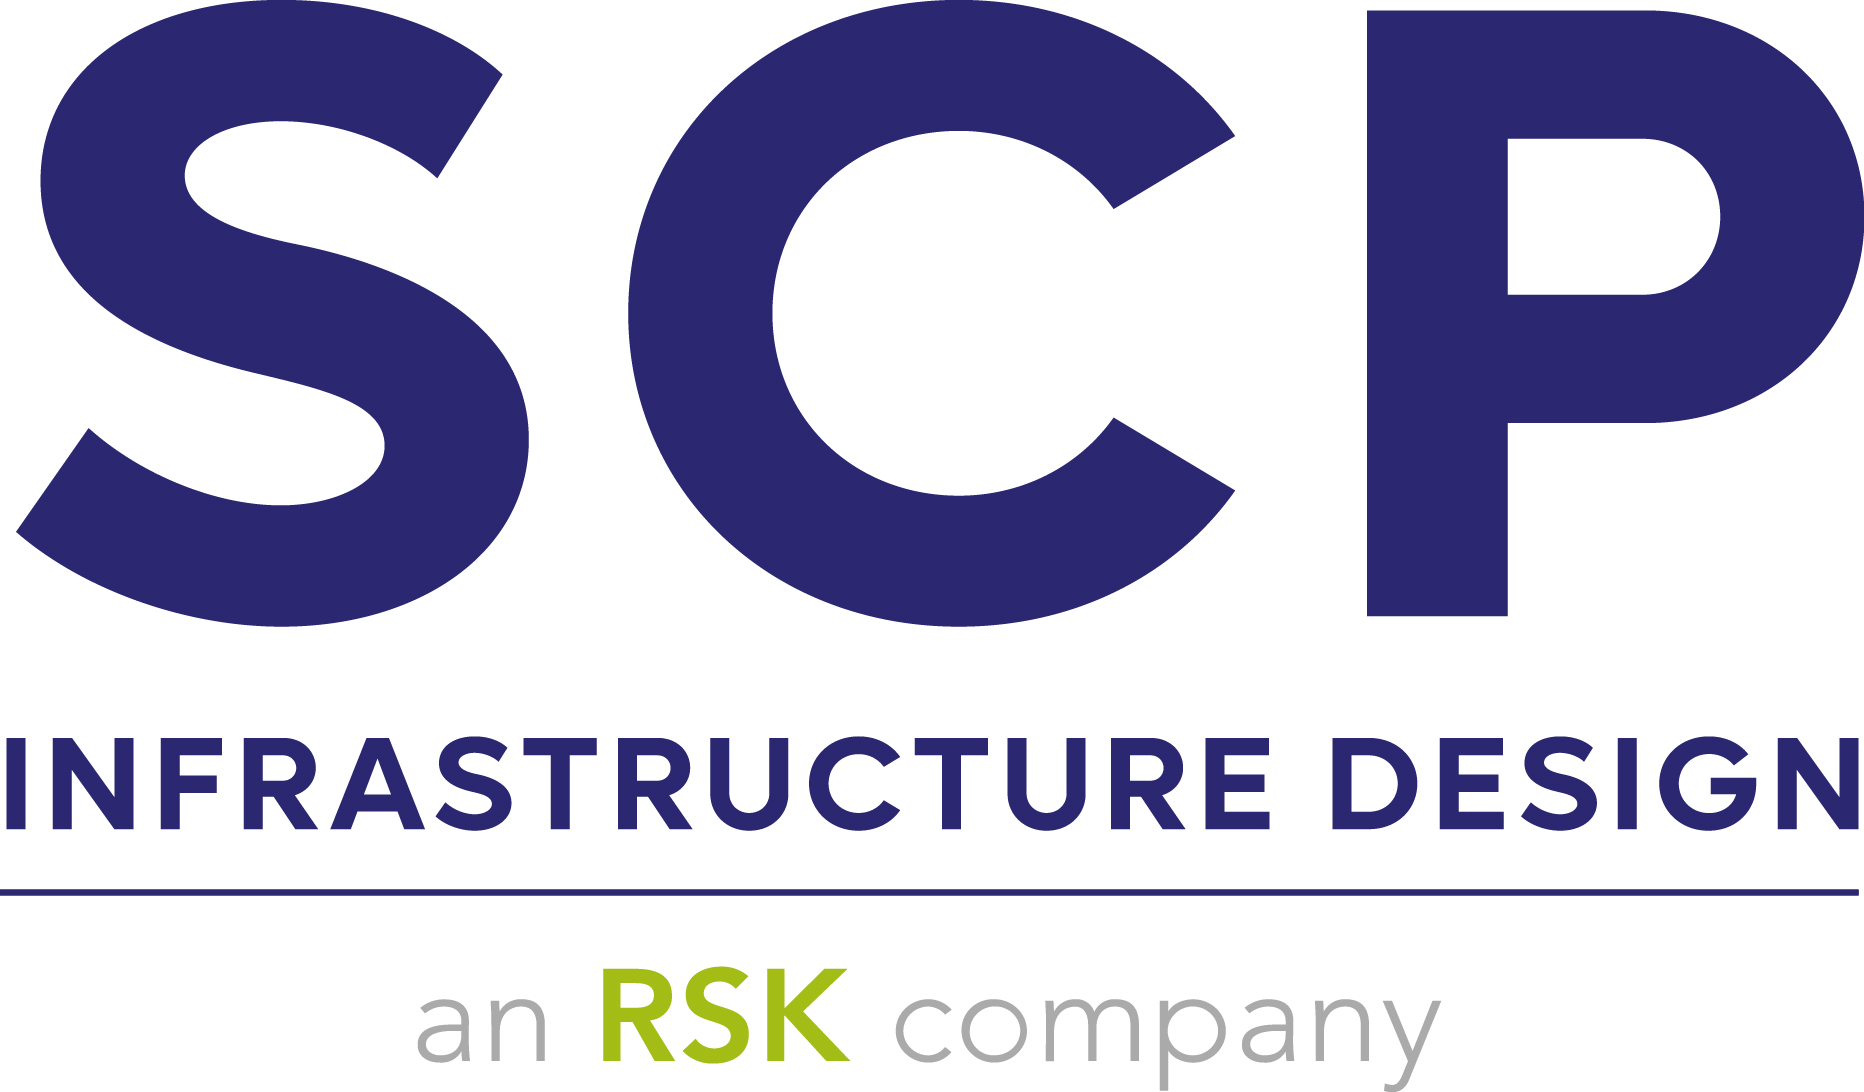 SCP logo